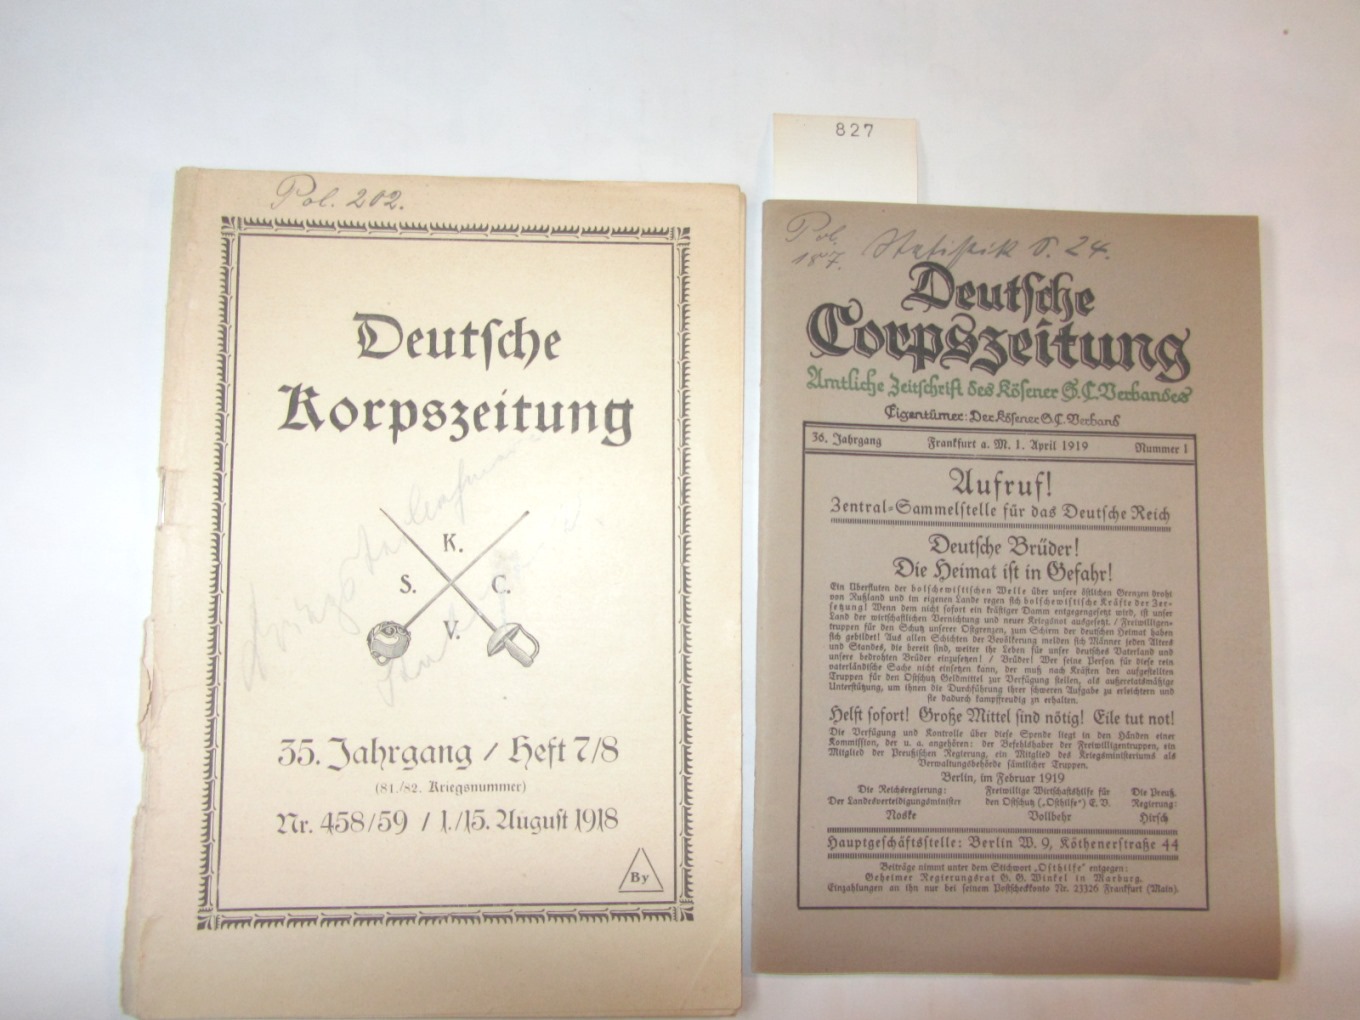   Deutsche Corpszeitung. 35.Jg., Nr. 1/1919. Amtliche Zeitschrift des Kösener S.C. Verbandes. 